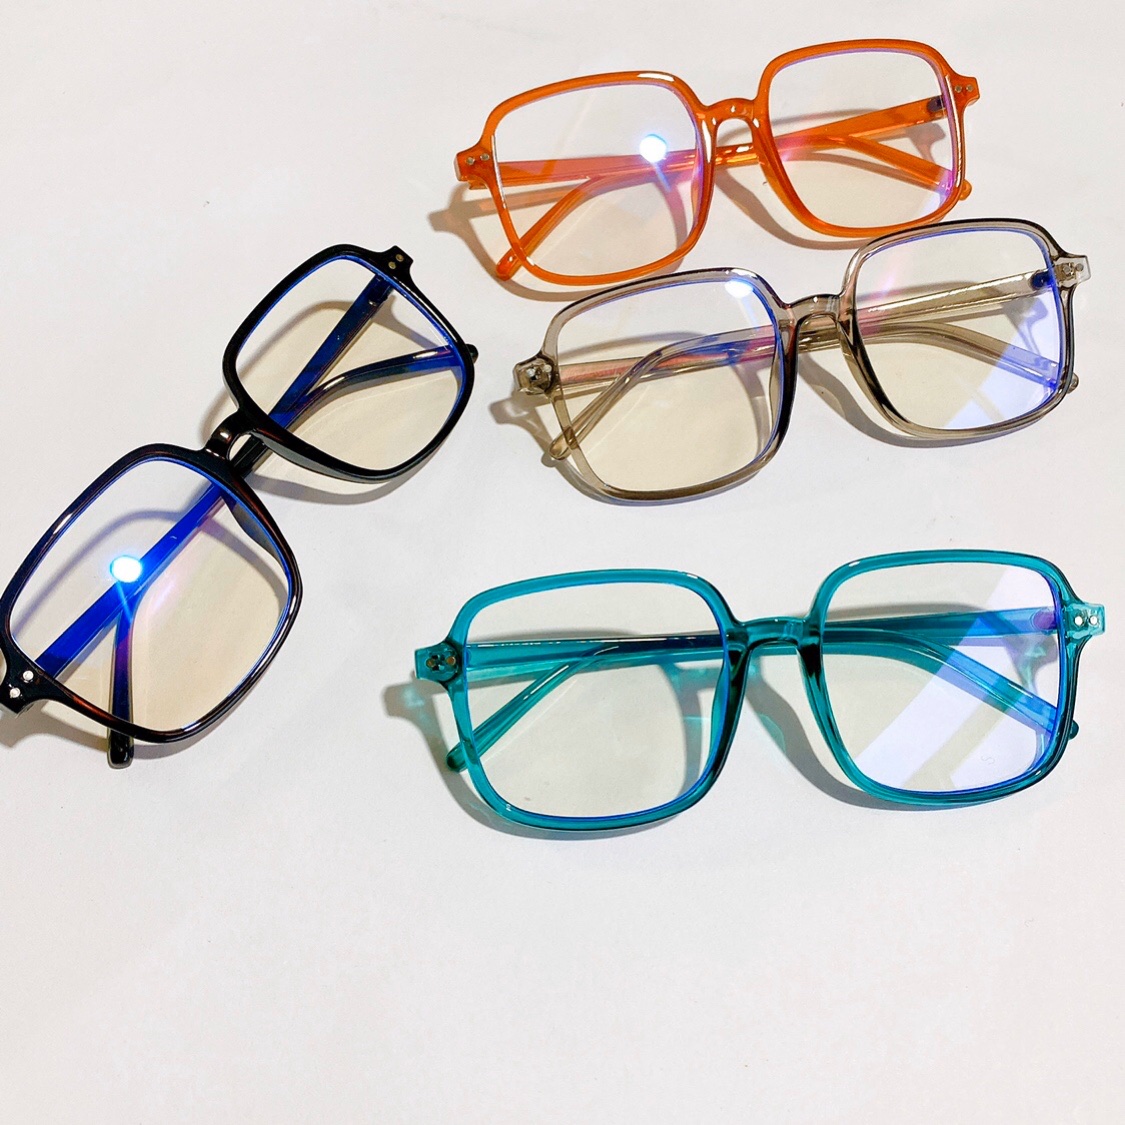 共177 件防近视眼镜护目相关商品